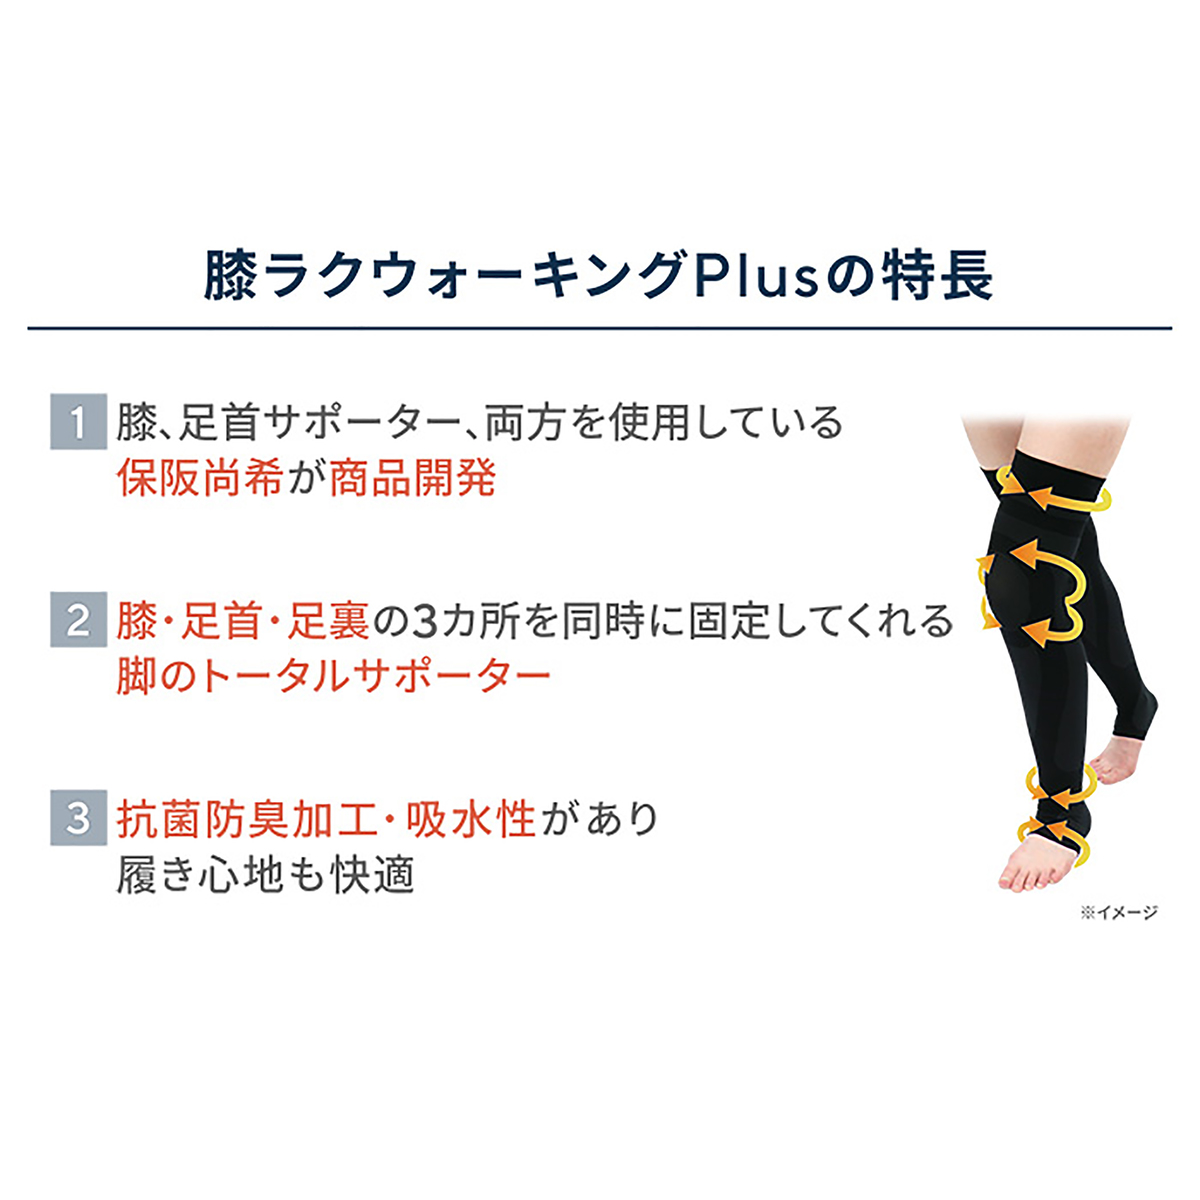 膝ラクウォーキングPlus 自由に選べる2点セット - QVC.jp